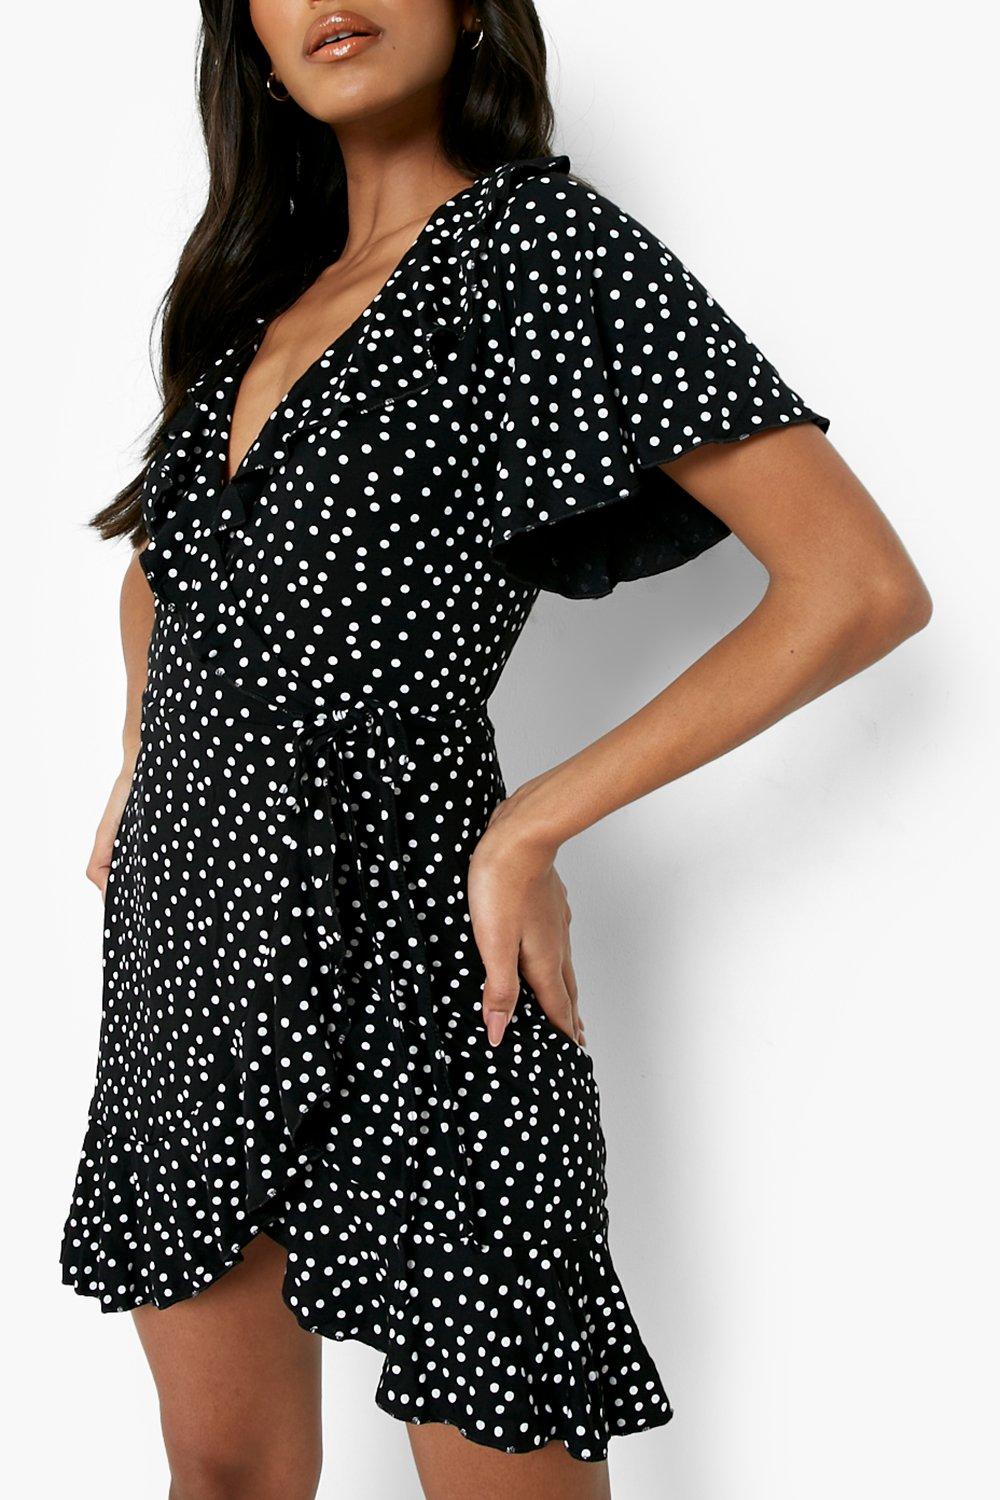 black and white polka dot ruffle dress